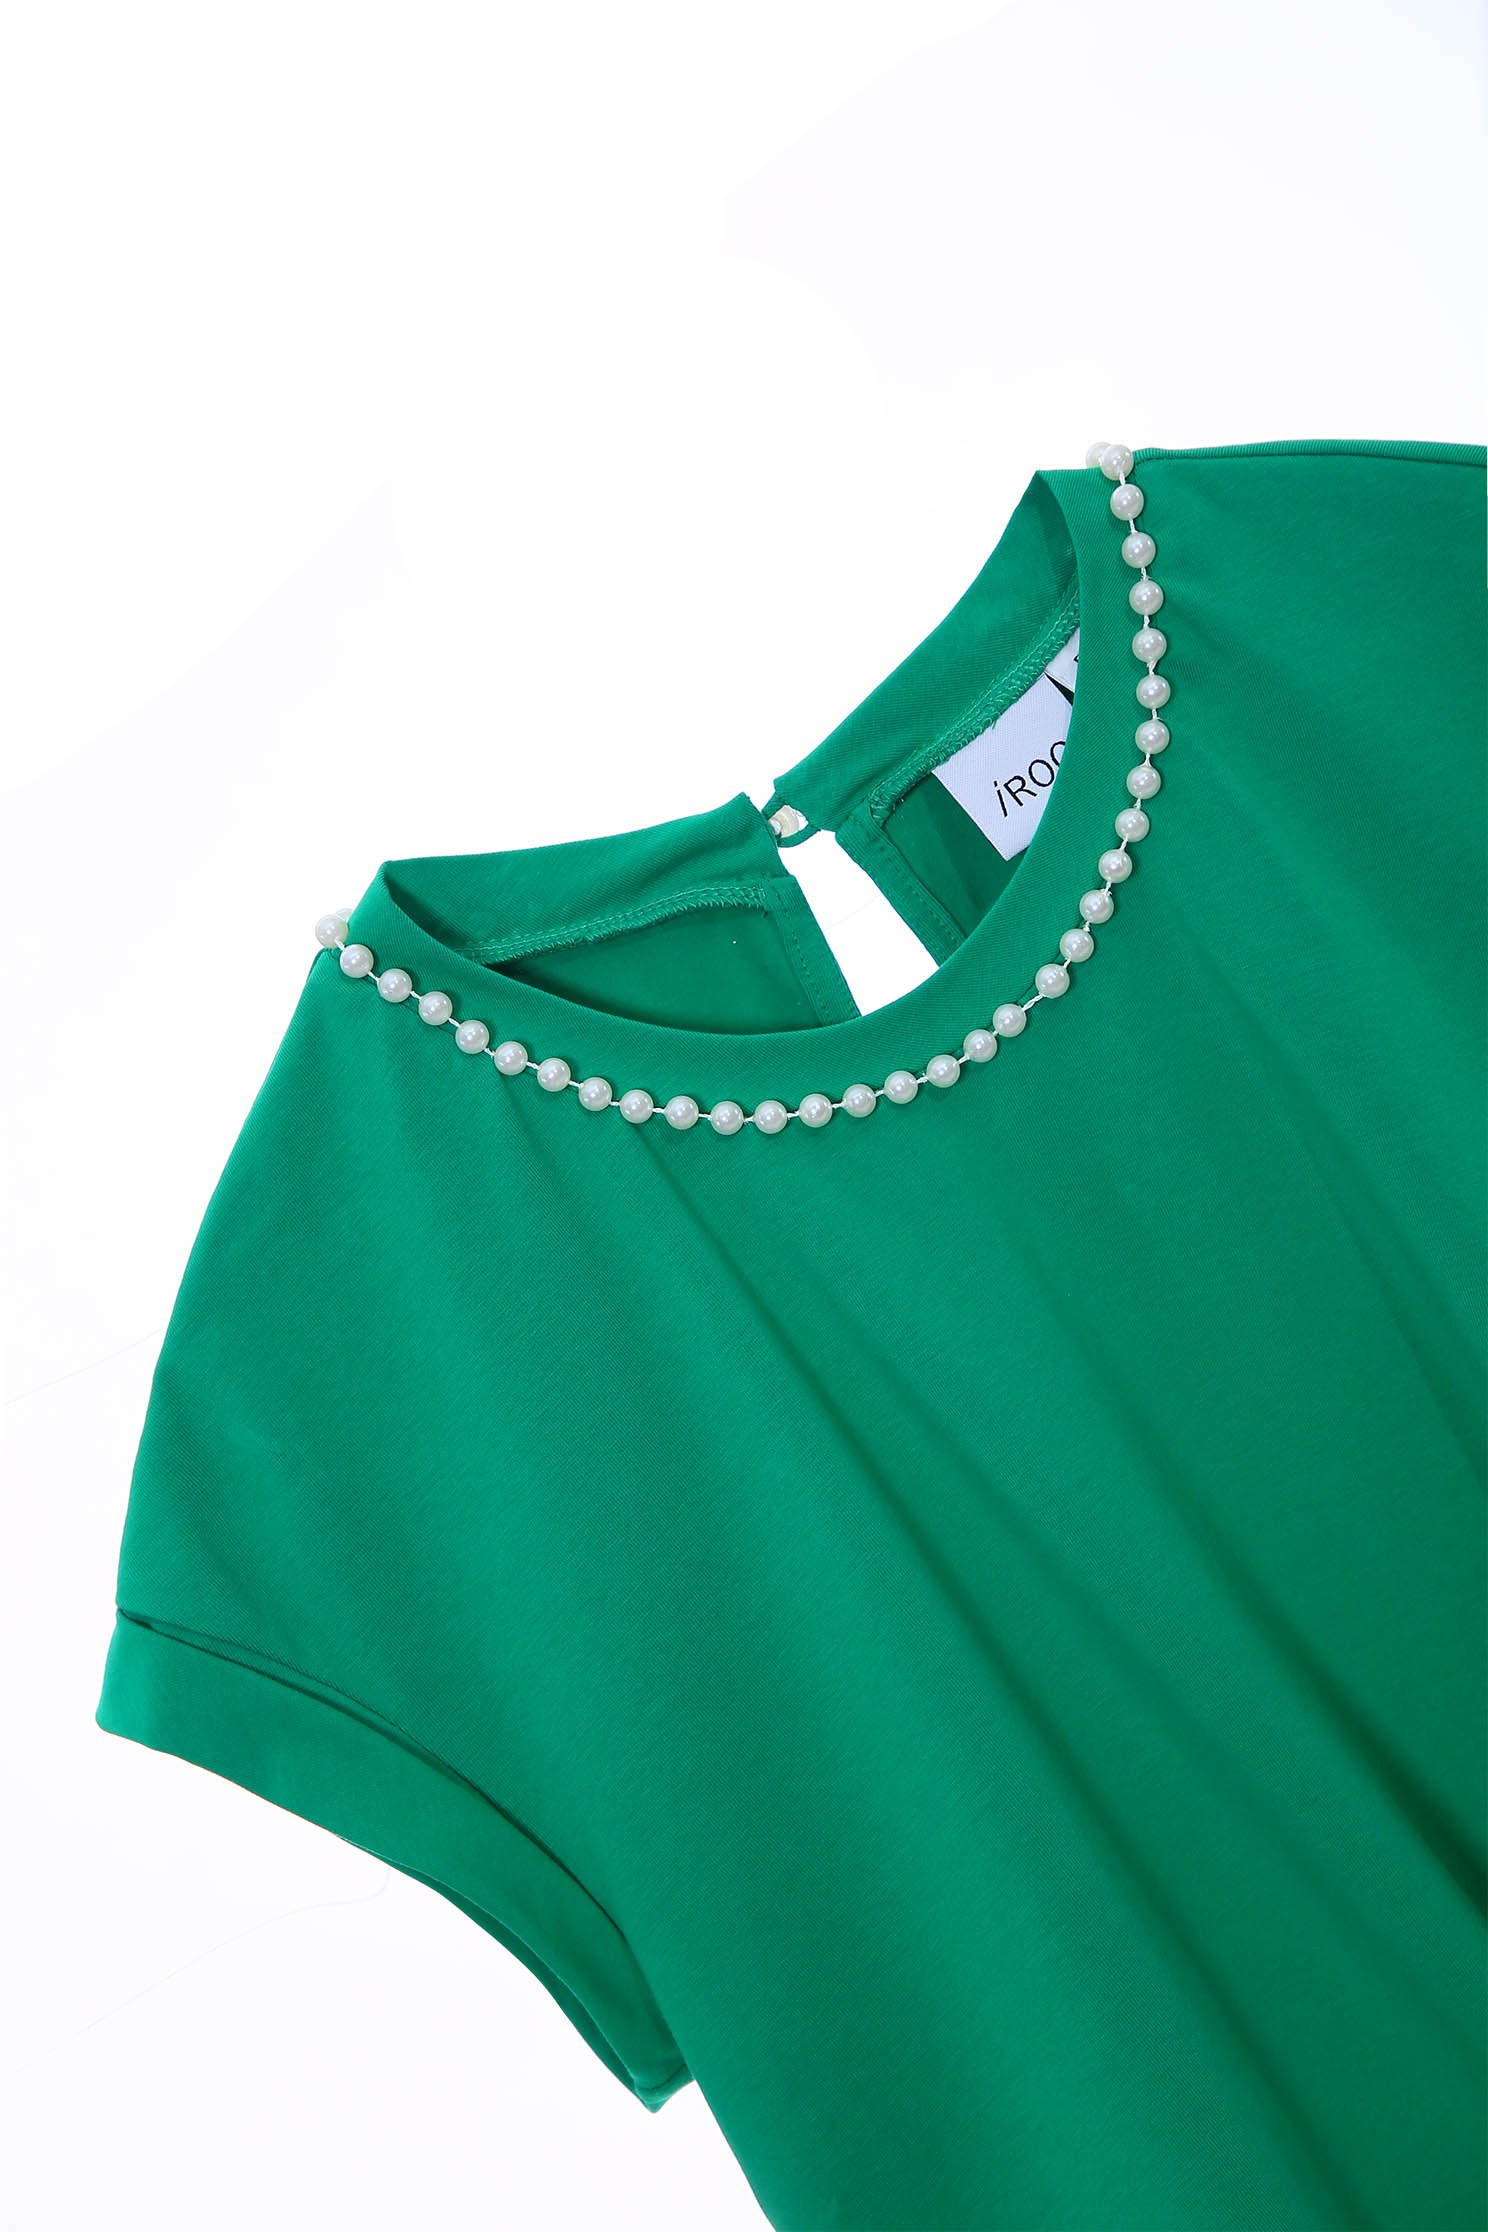 珍珠領圈T恤上衣,珍珠 棉,綠色 上衣,圓領 上衣珍珠領圈T恤上衣,T恤,上衣,春夏穿搭,珍珠,視覺顯瘦